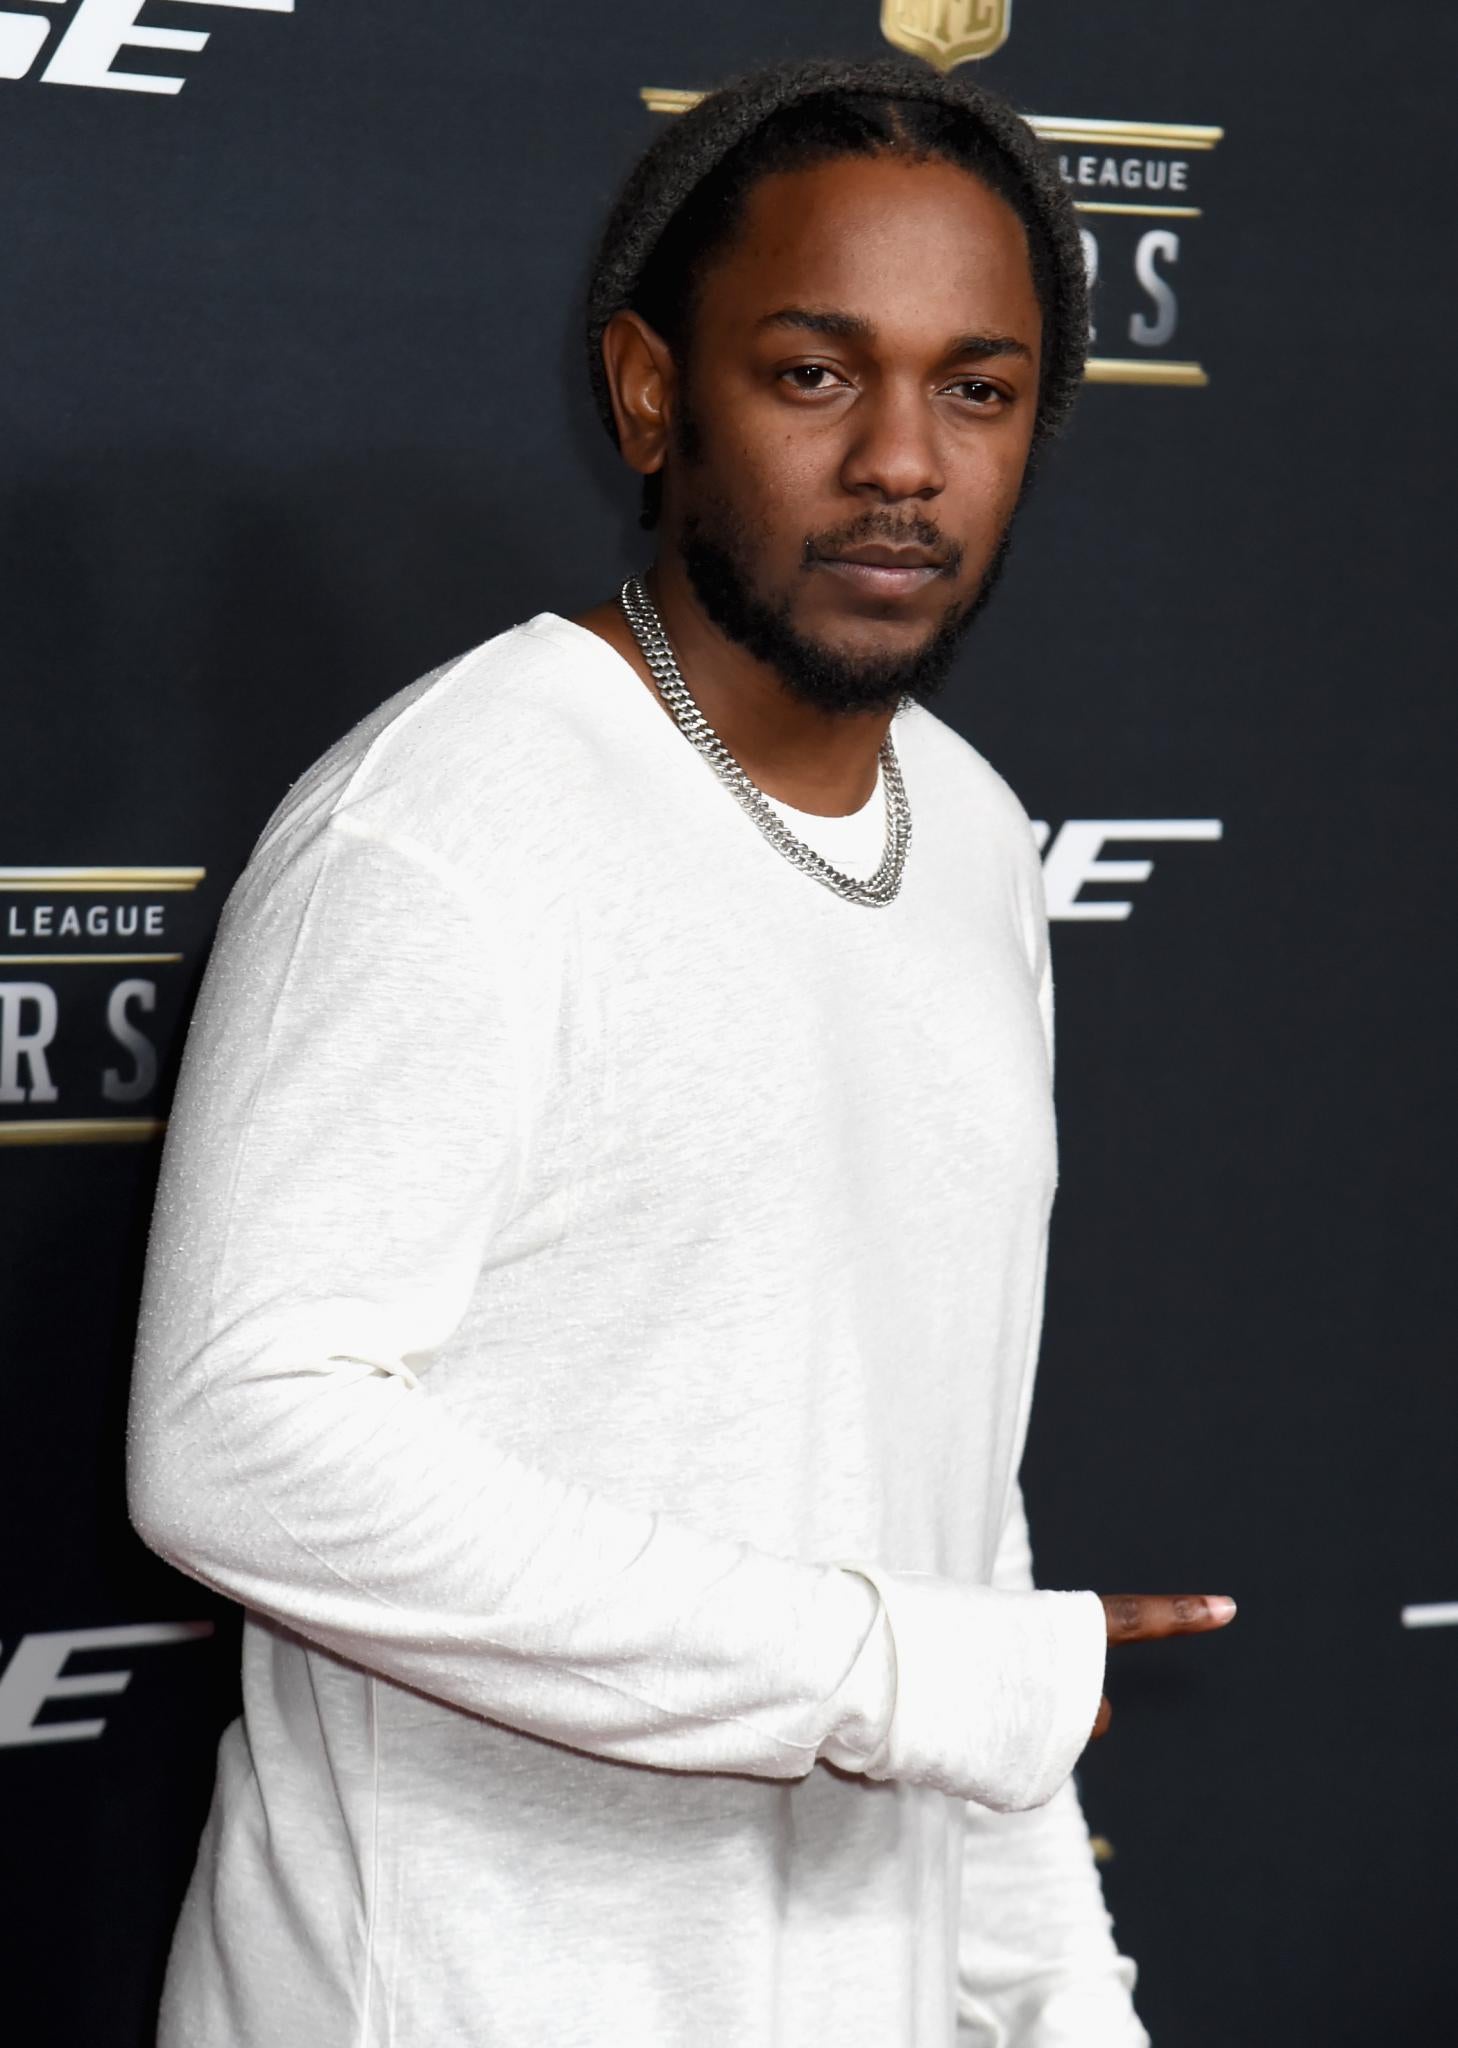 ESSENCE Fest Headliner Kendrick Lamar Drops Spoken-Word Video